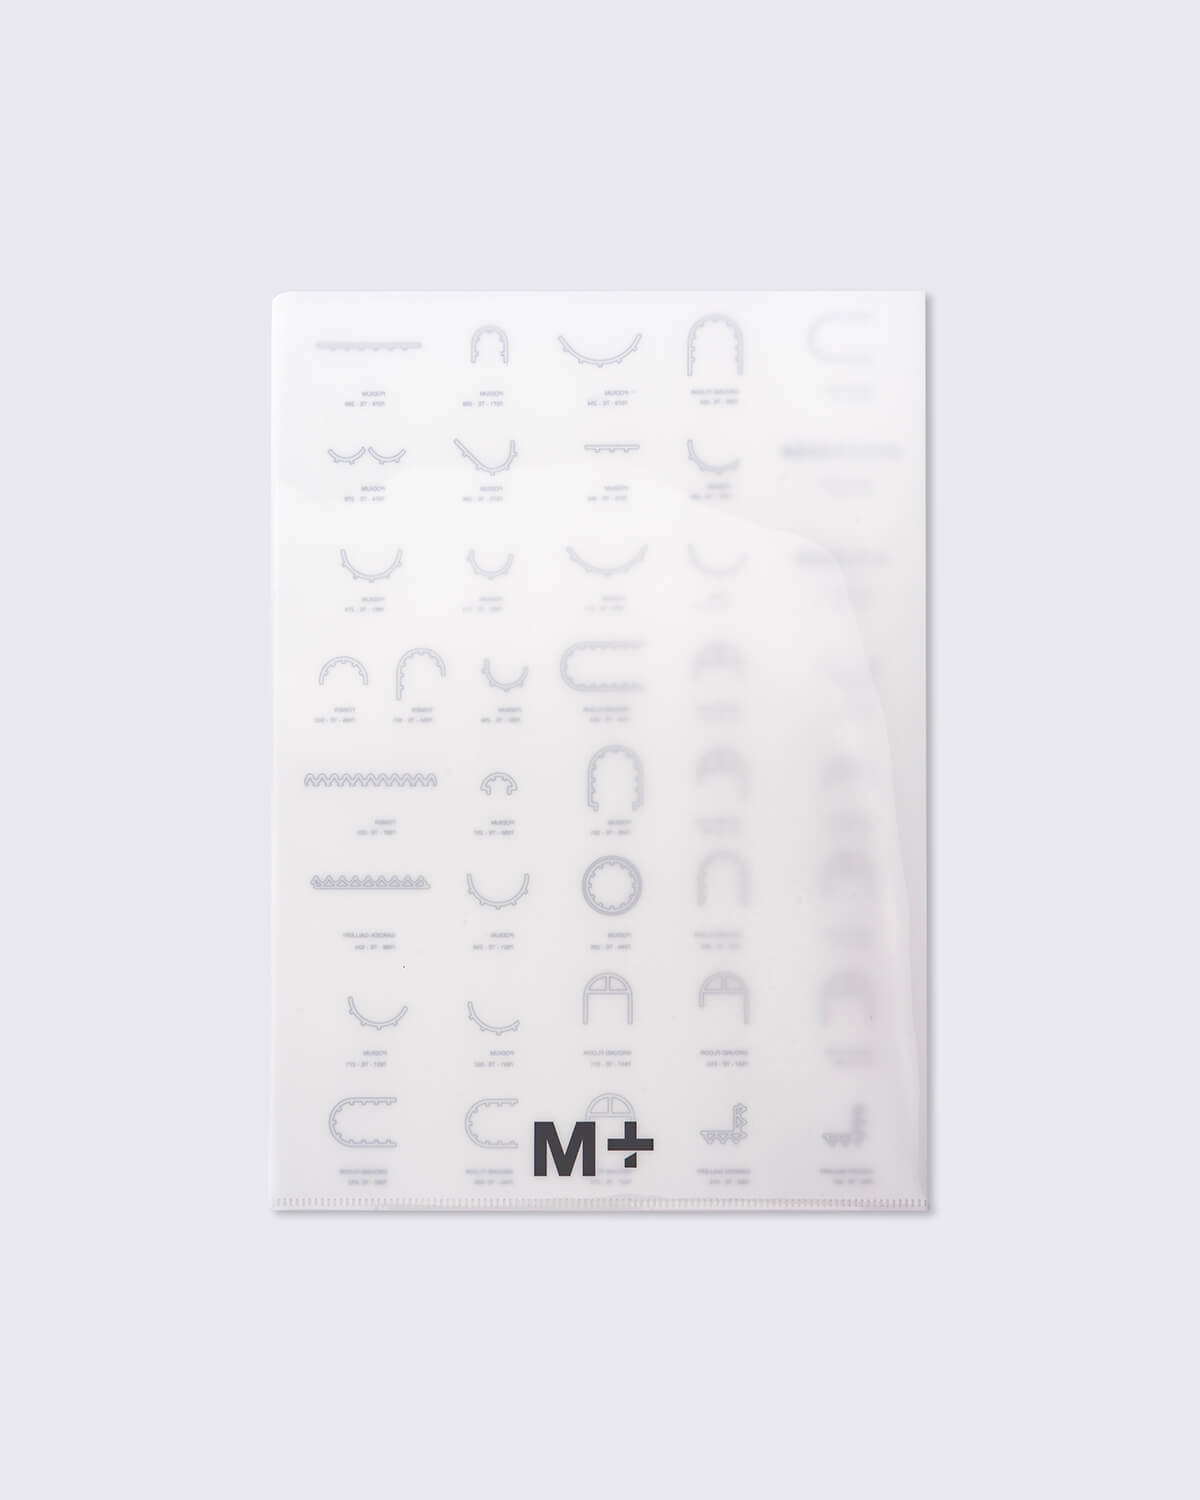 M+大樓陶瓦包覆組件設計圖文件夾